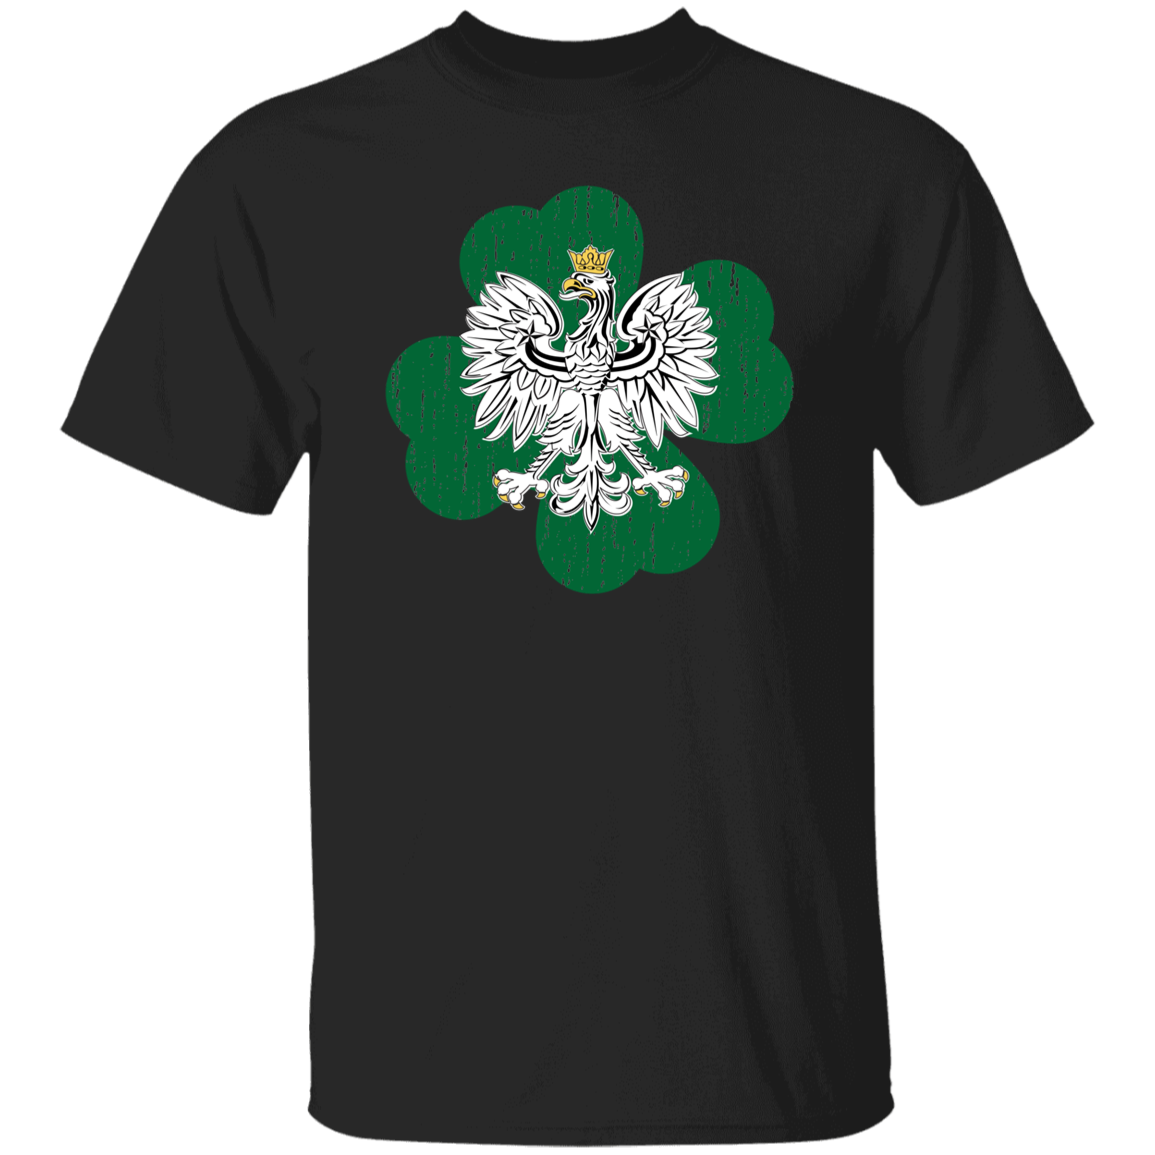 Polish Eagle Irish Clover Apparel CustomCat G500 5.3 oz. T-Shirt Black S